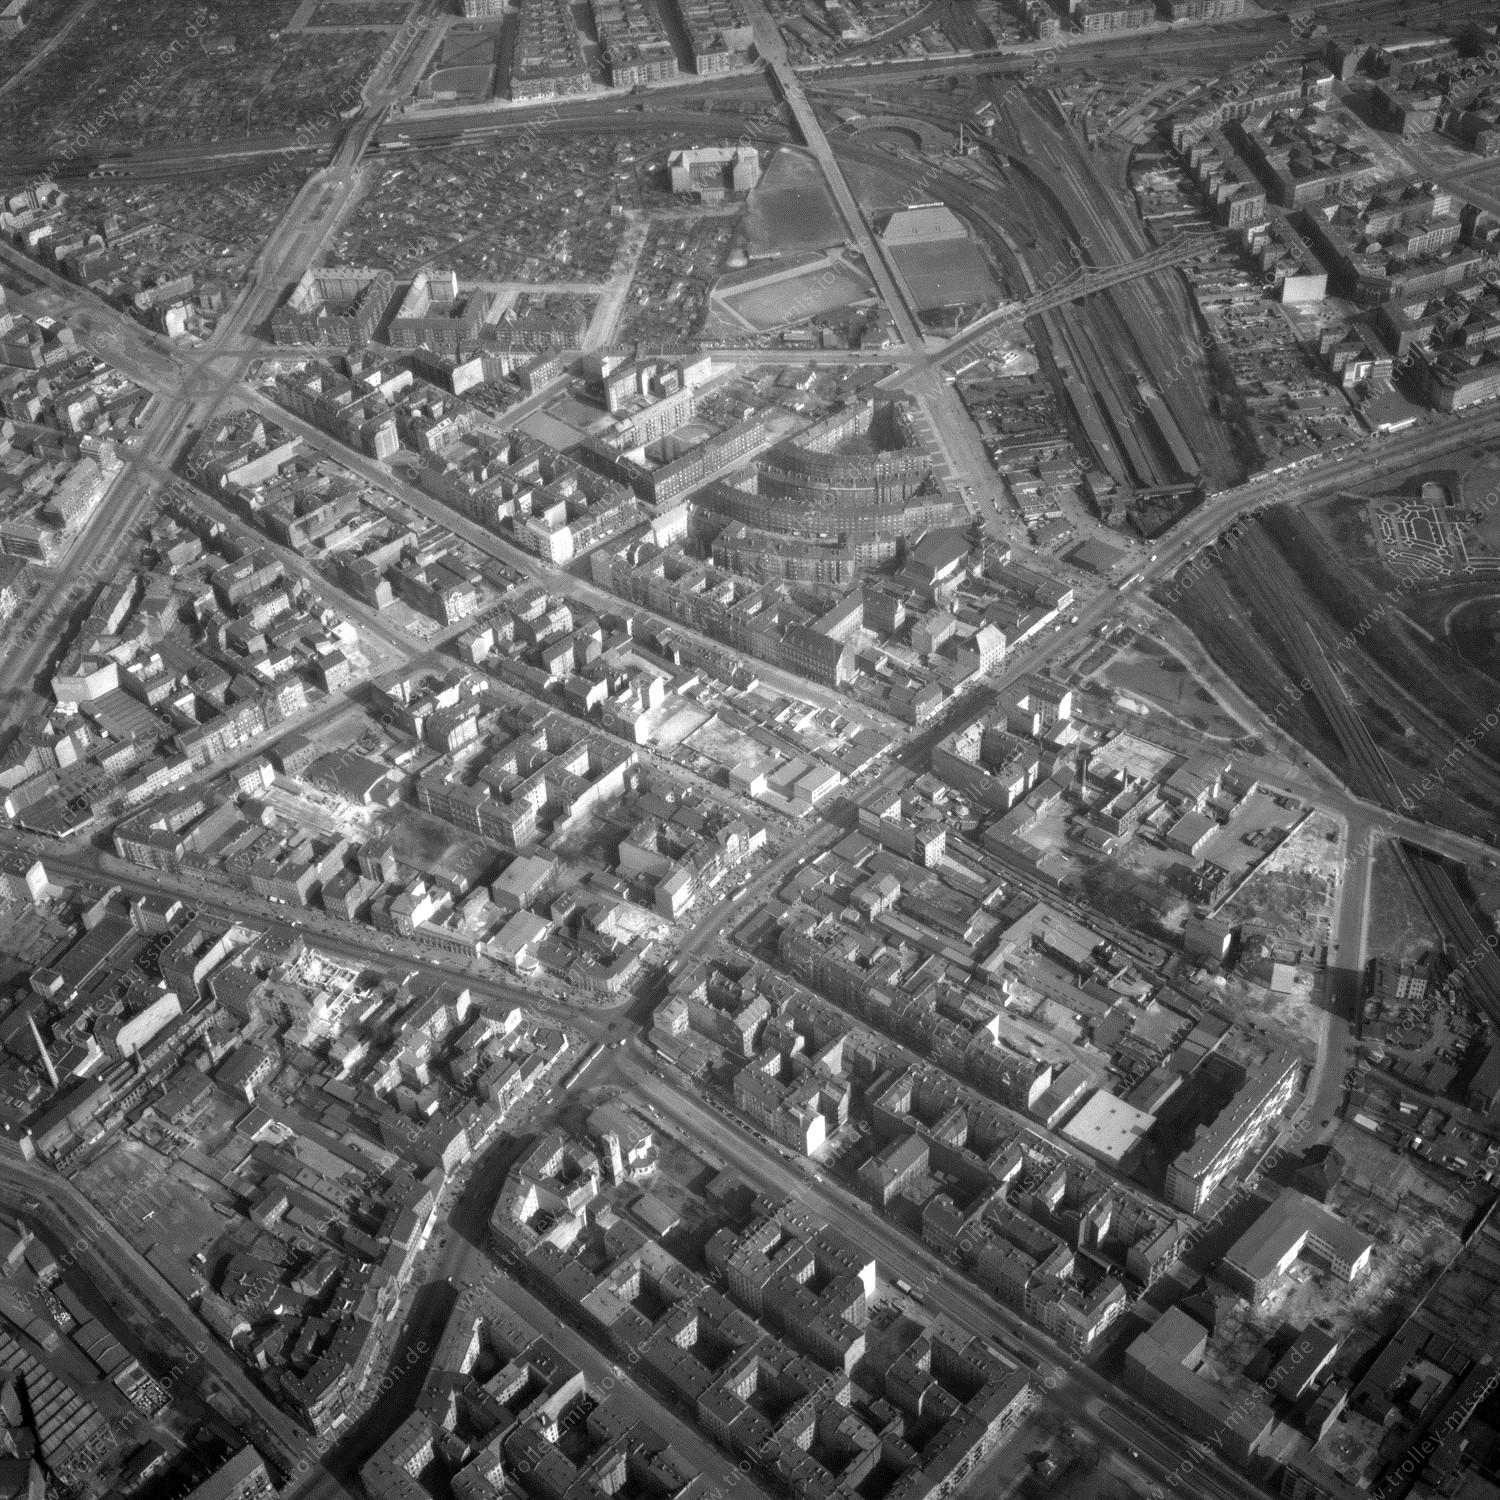 Alte Fotos und Luftbilder von Berlin - Luftbildaufnahme Nr. 12 - Historische Luftaufnahmen von West-Berlin aus dem Jahr 1954 - Flugstrecke Romeo